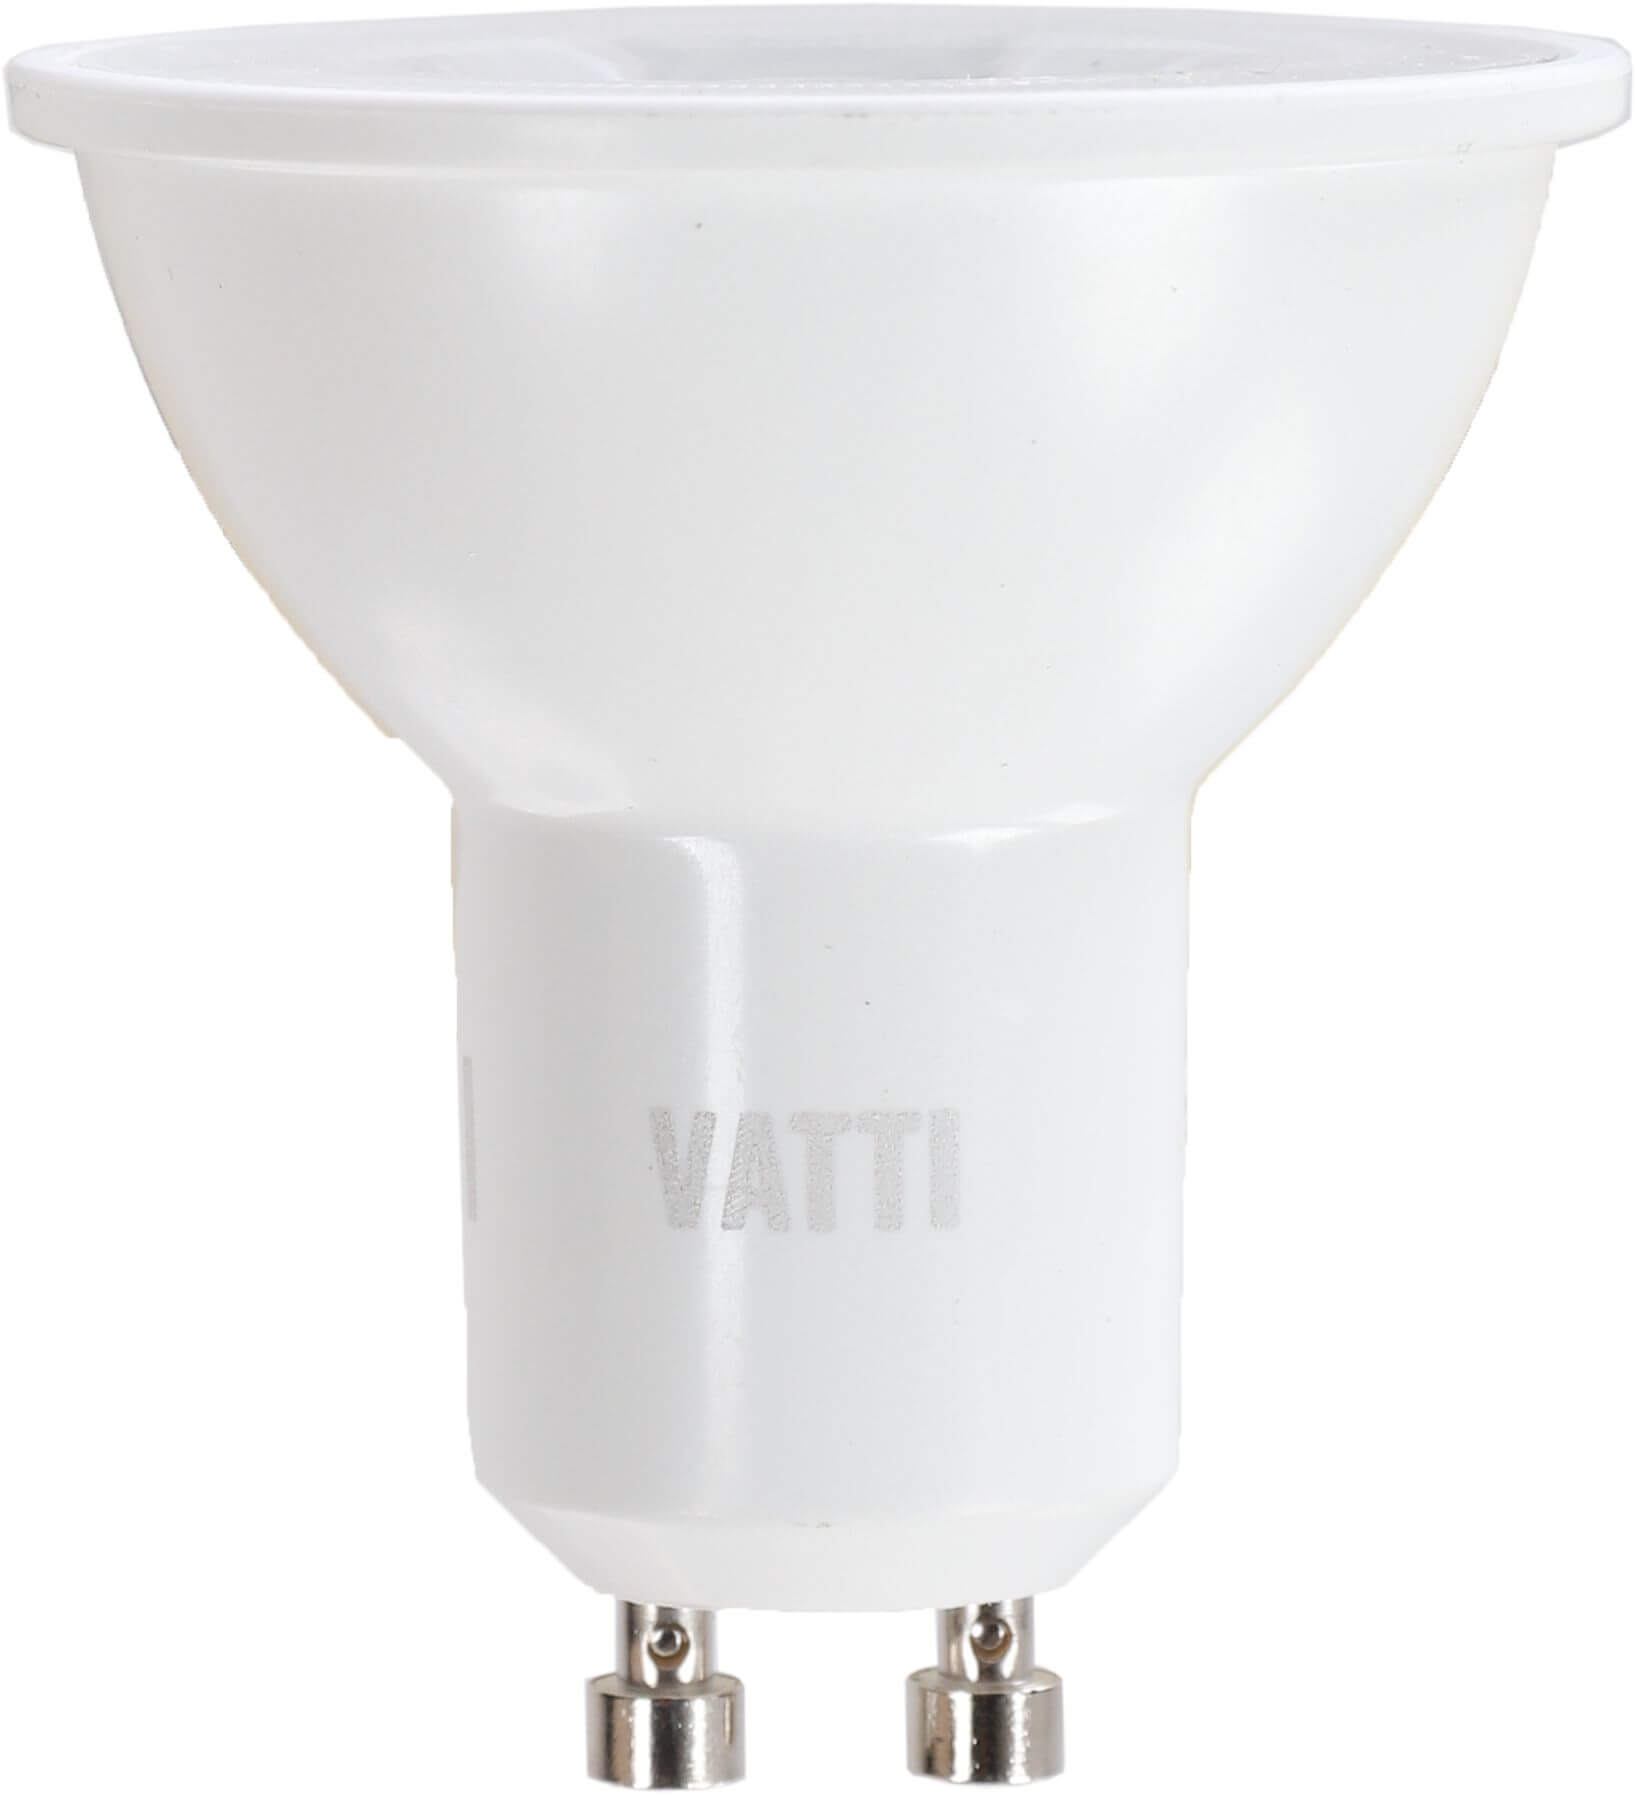 Led lamppu GU10, 345 lm, 4 kpl, Vatti